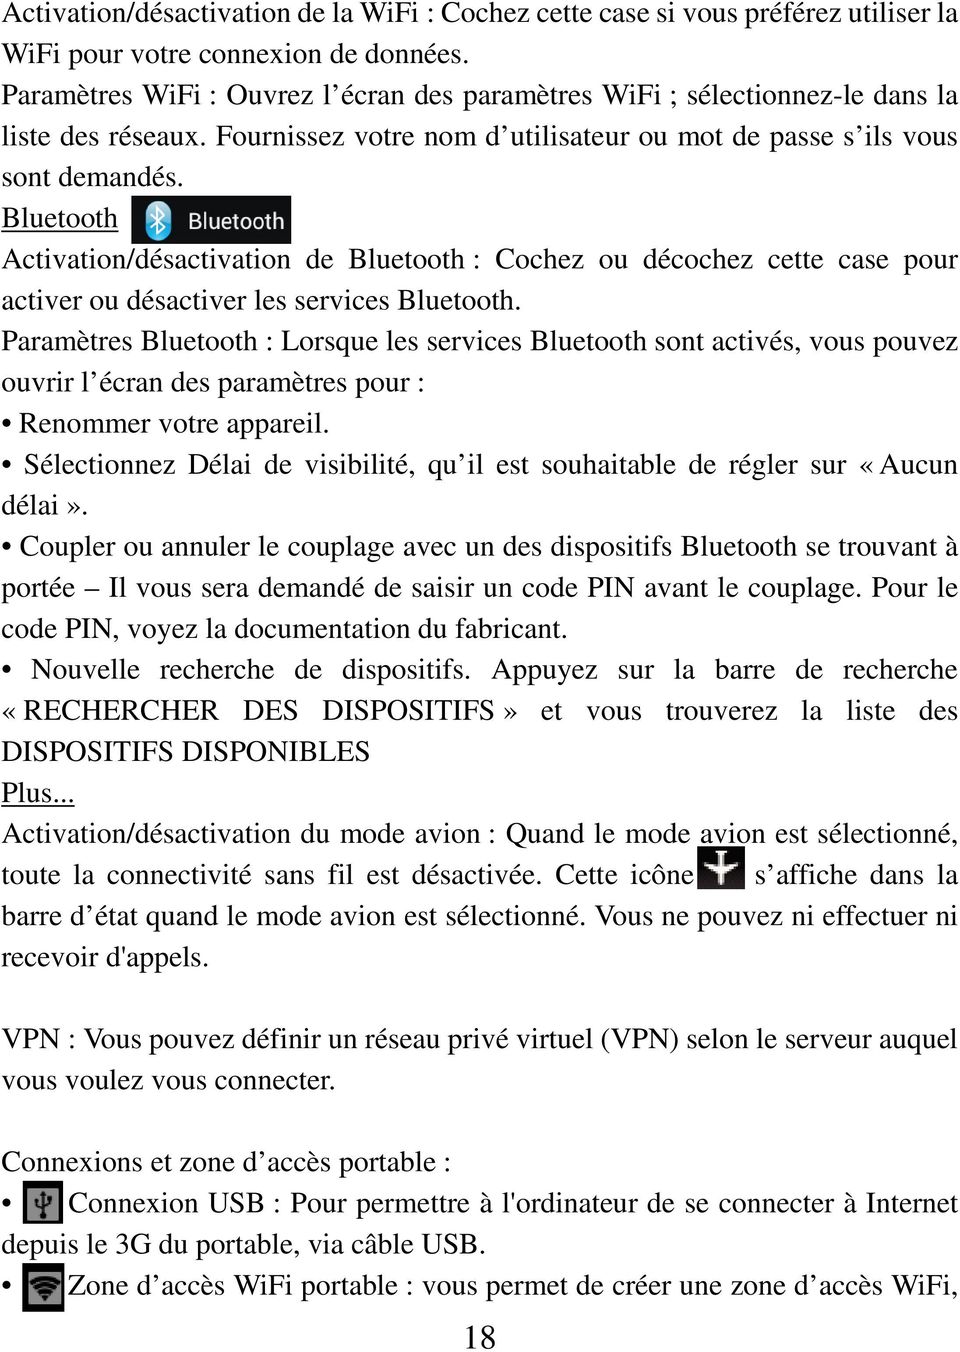 Bluetooth Activation/désactivation de Bluetooth : Cochez ou décochez cette case pour activer ou désactiver les services Bluetooth.